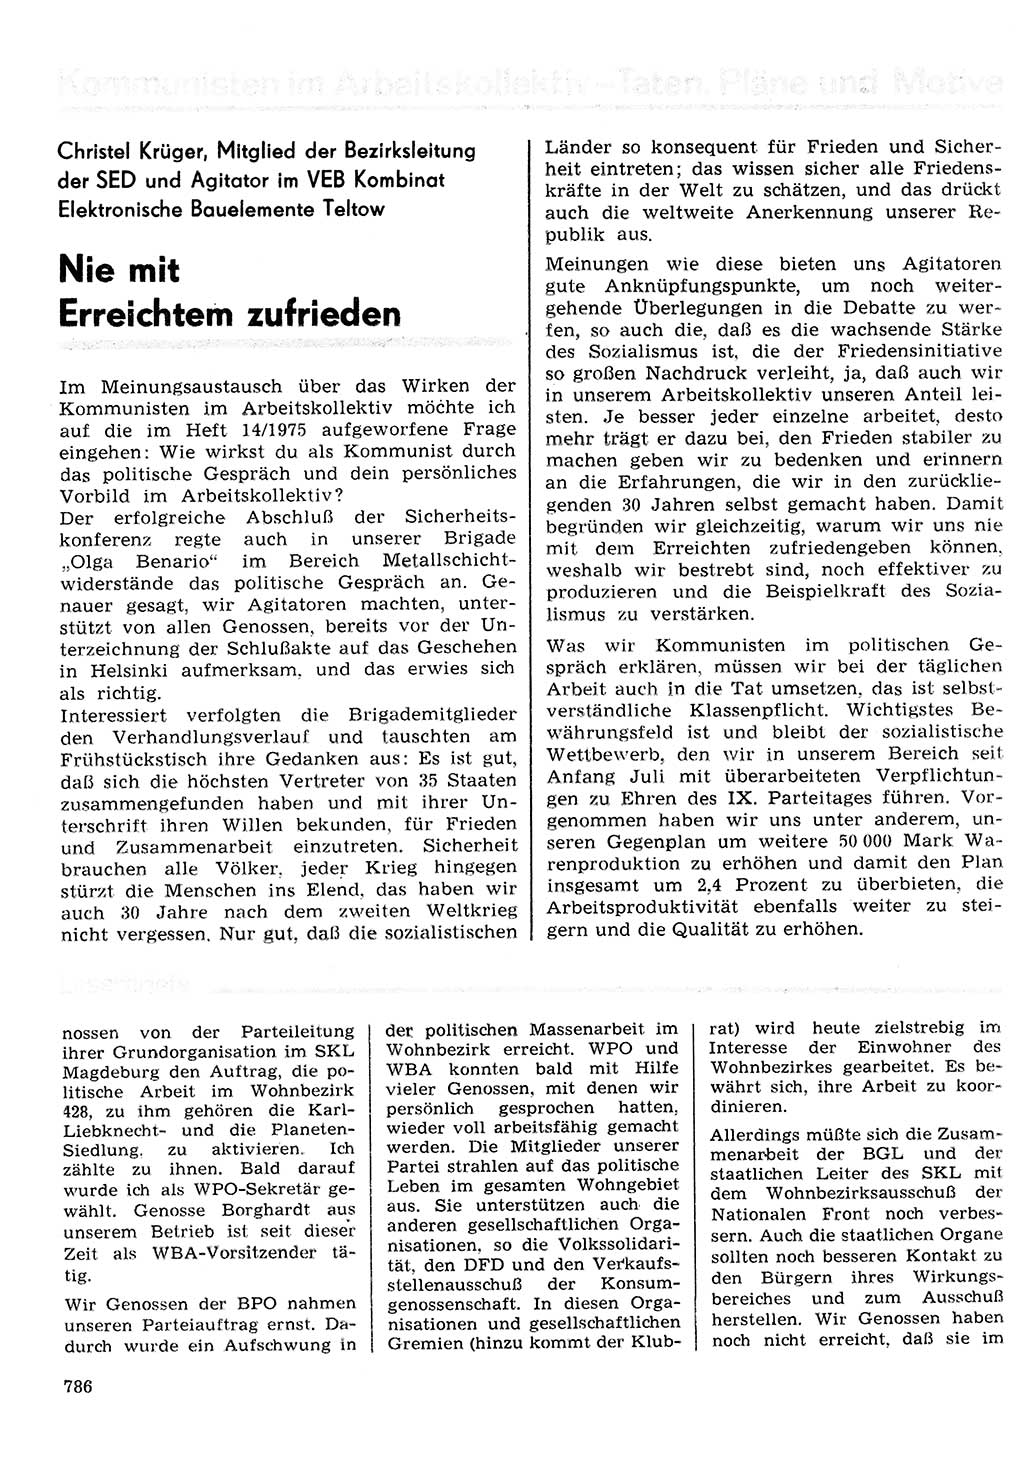 Neuer Weg (NW), Organ des Zentralkomitees (ZK) der SED (Sozialistische Einheitspartei Deutschlands) für Fragen des Parteilebens, 30. Jahrgang [Deutsche Demokratische Republik (DDR)] 1975, Seite 786 (NW ZK SED DDR 1975, S. 786)